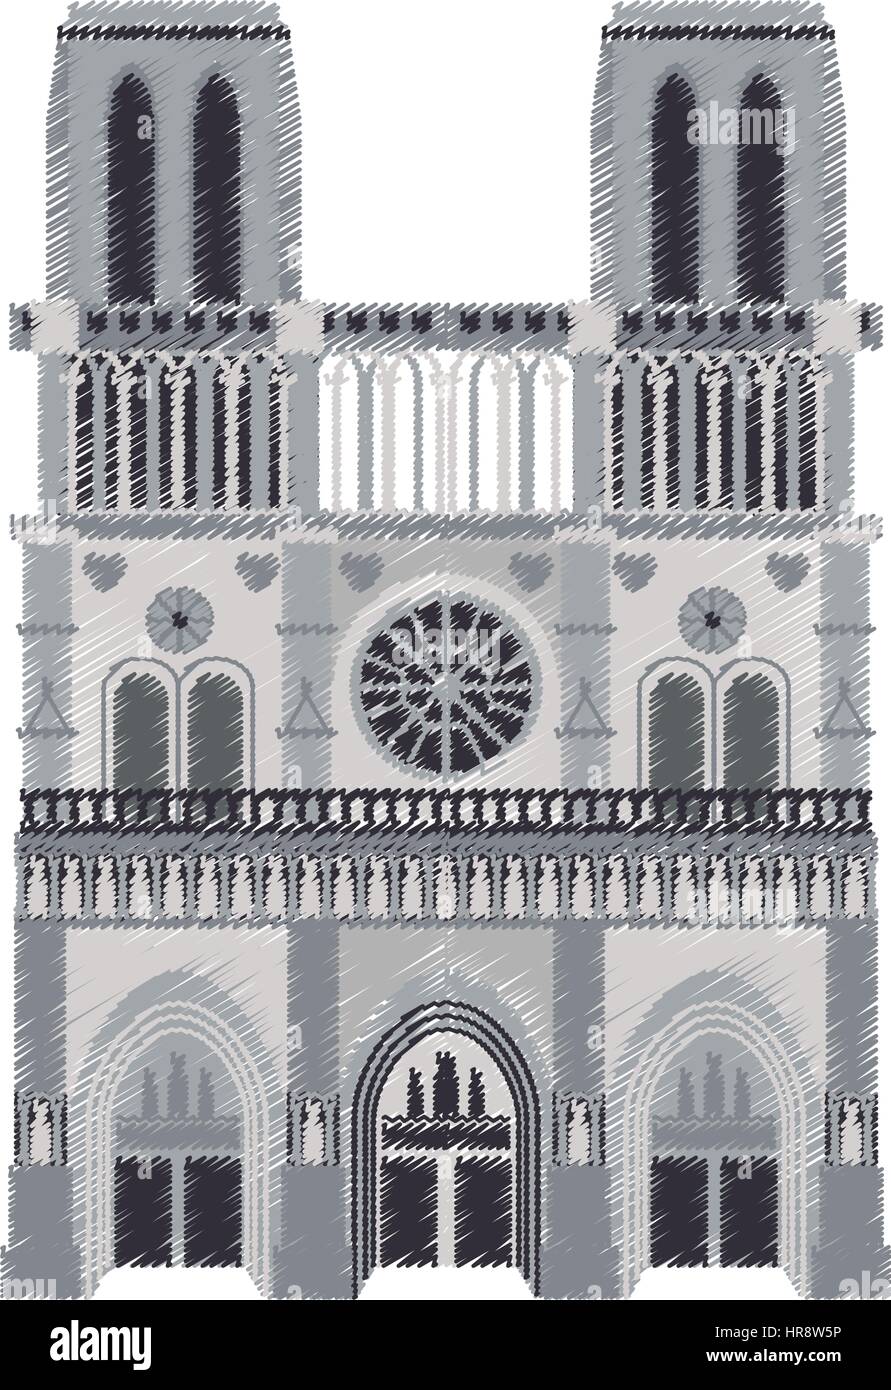 La cathédrale Notre dame paris droit Illustration de Vecteur